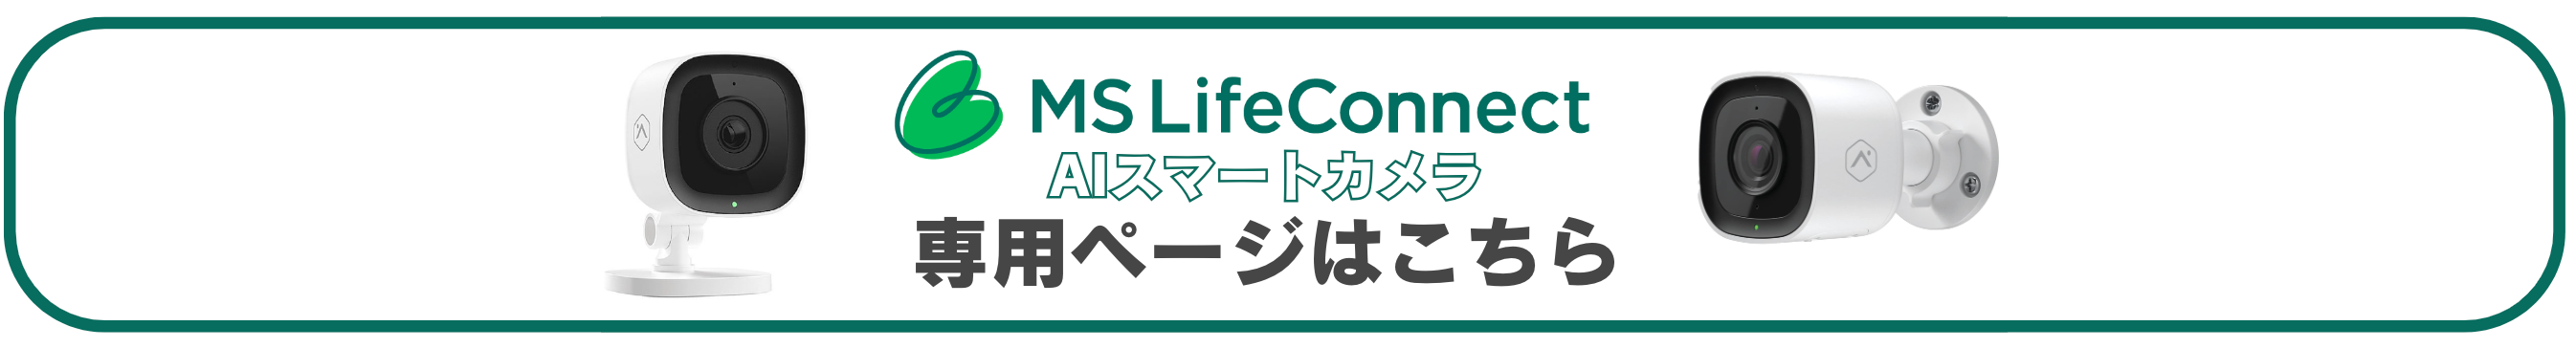 MS LifeConnect AIスマートカメラ専用ページはこちら